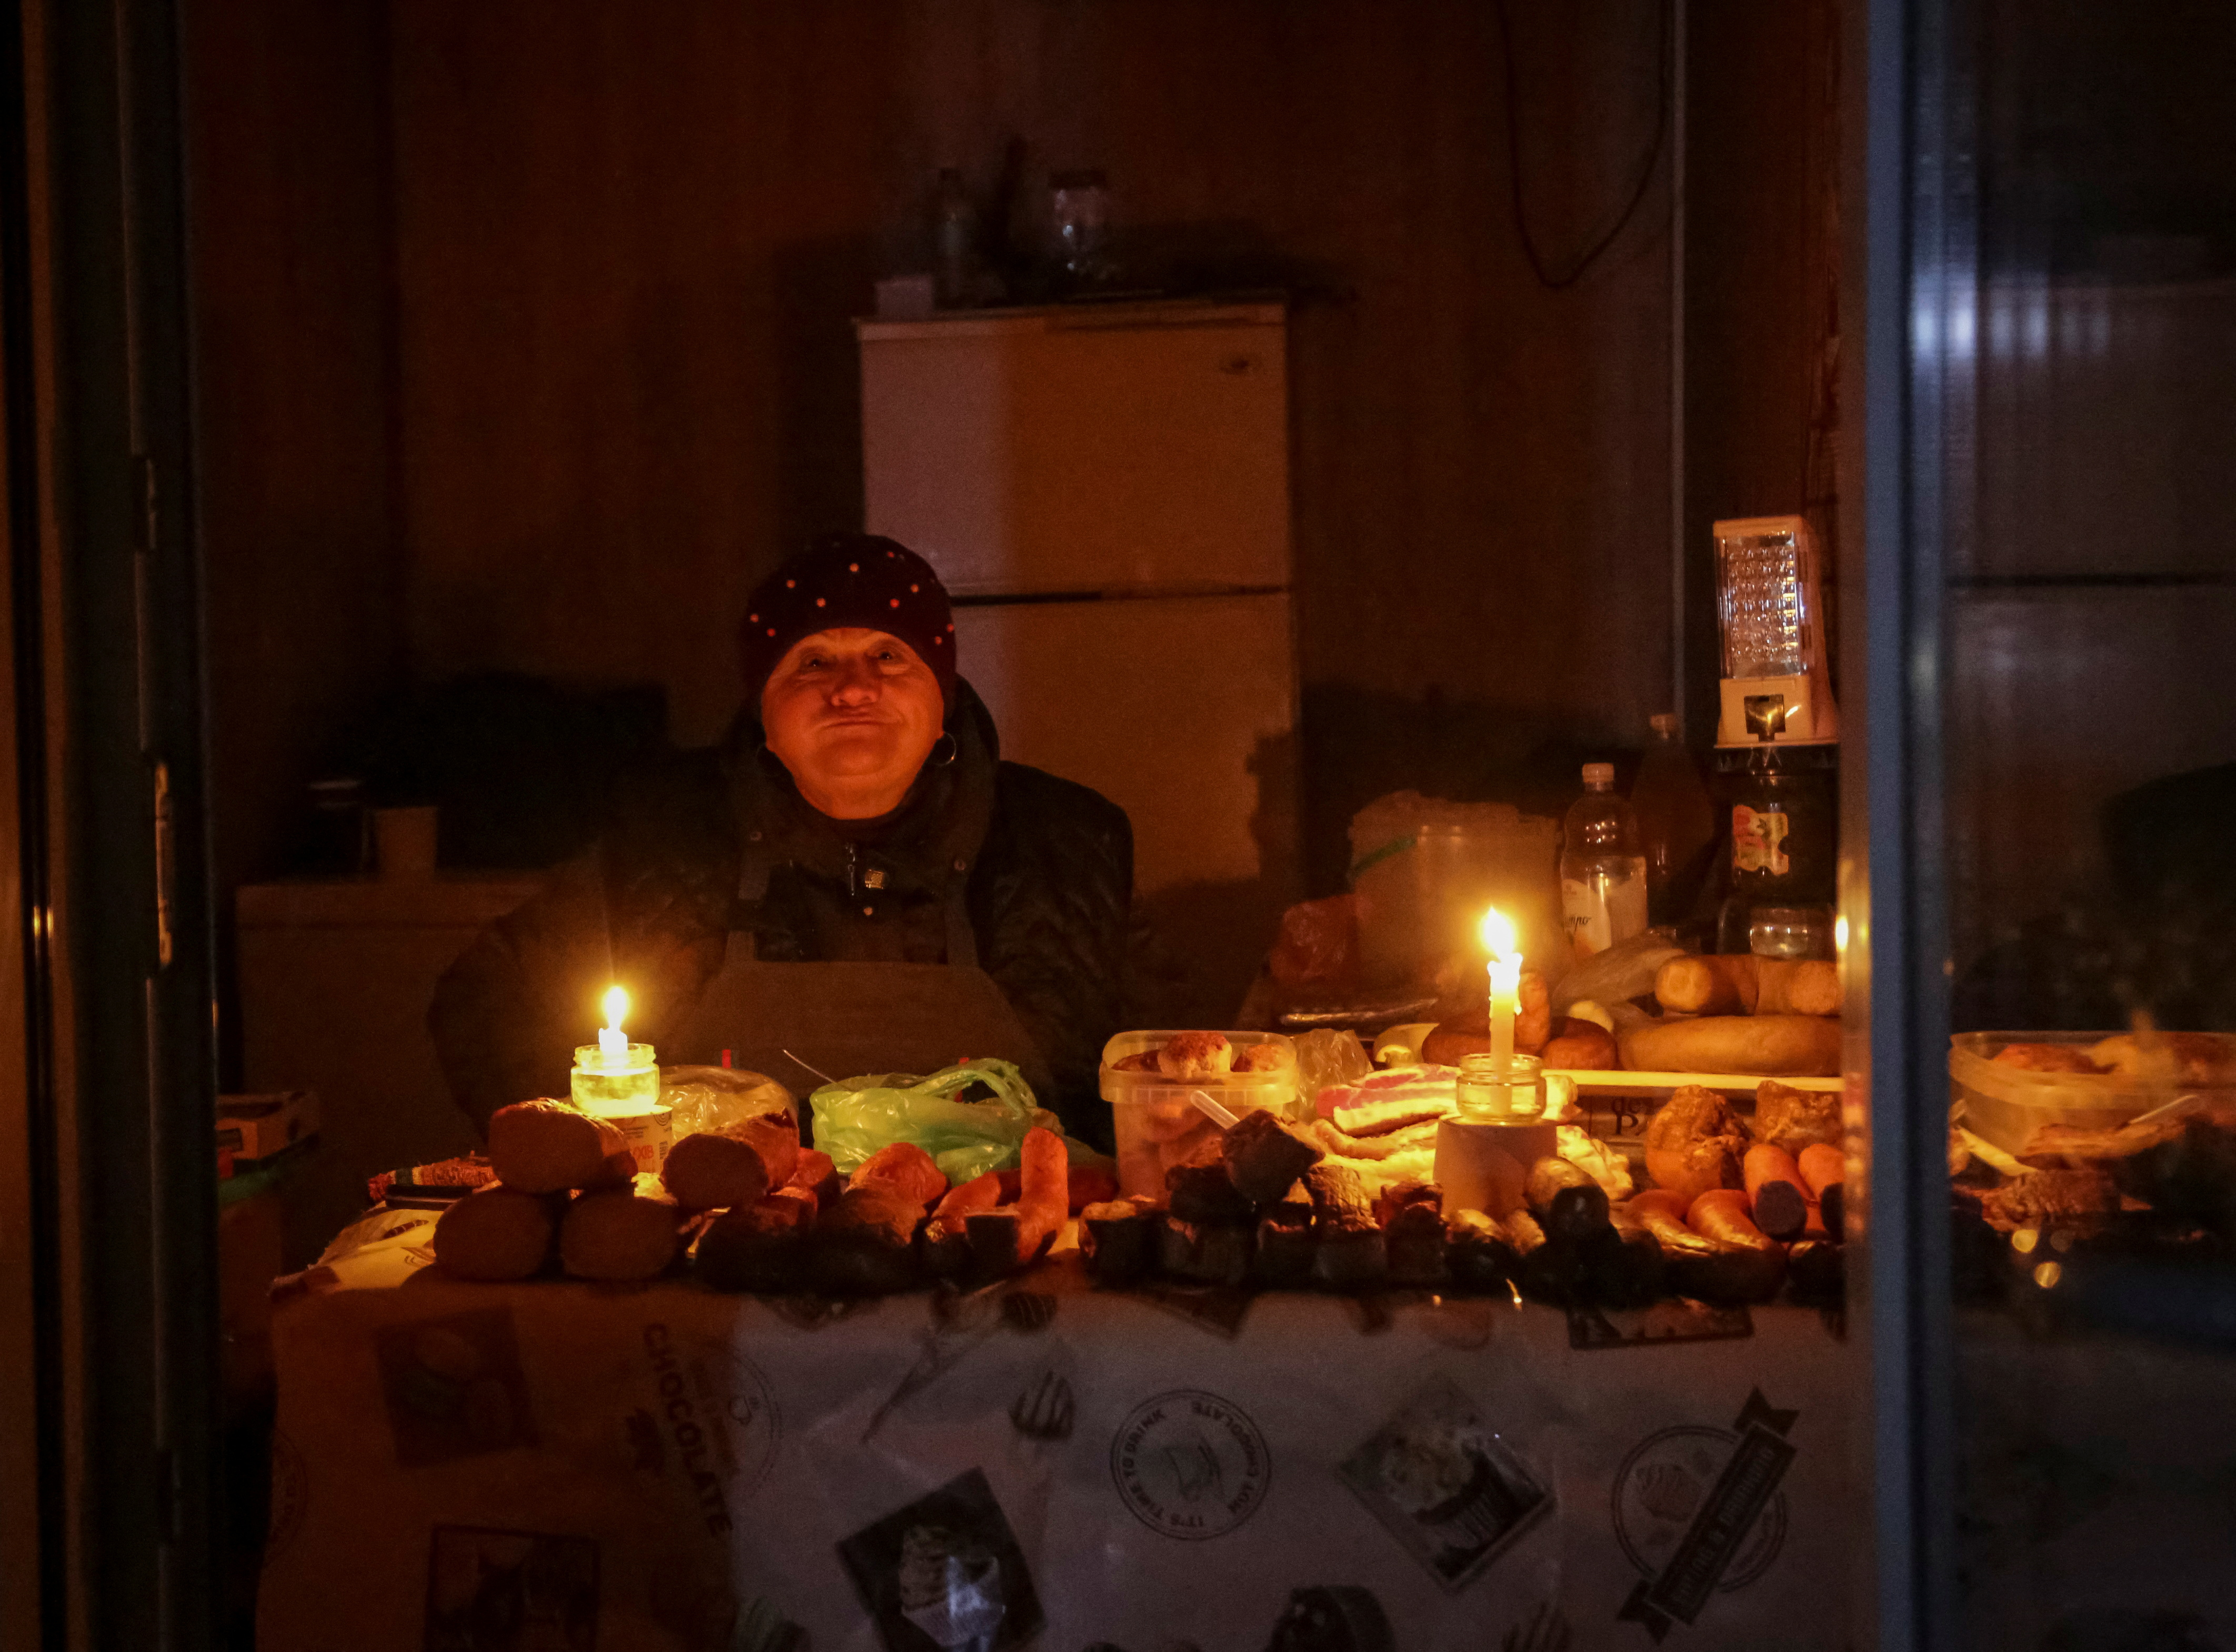 Ucrania trabaja en restaurar su servicio eléctrico dañado por los ataques rusos. (FOTO: REUTERS/Serhii Smolientsev)